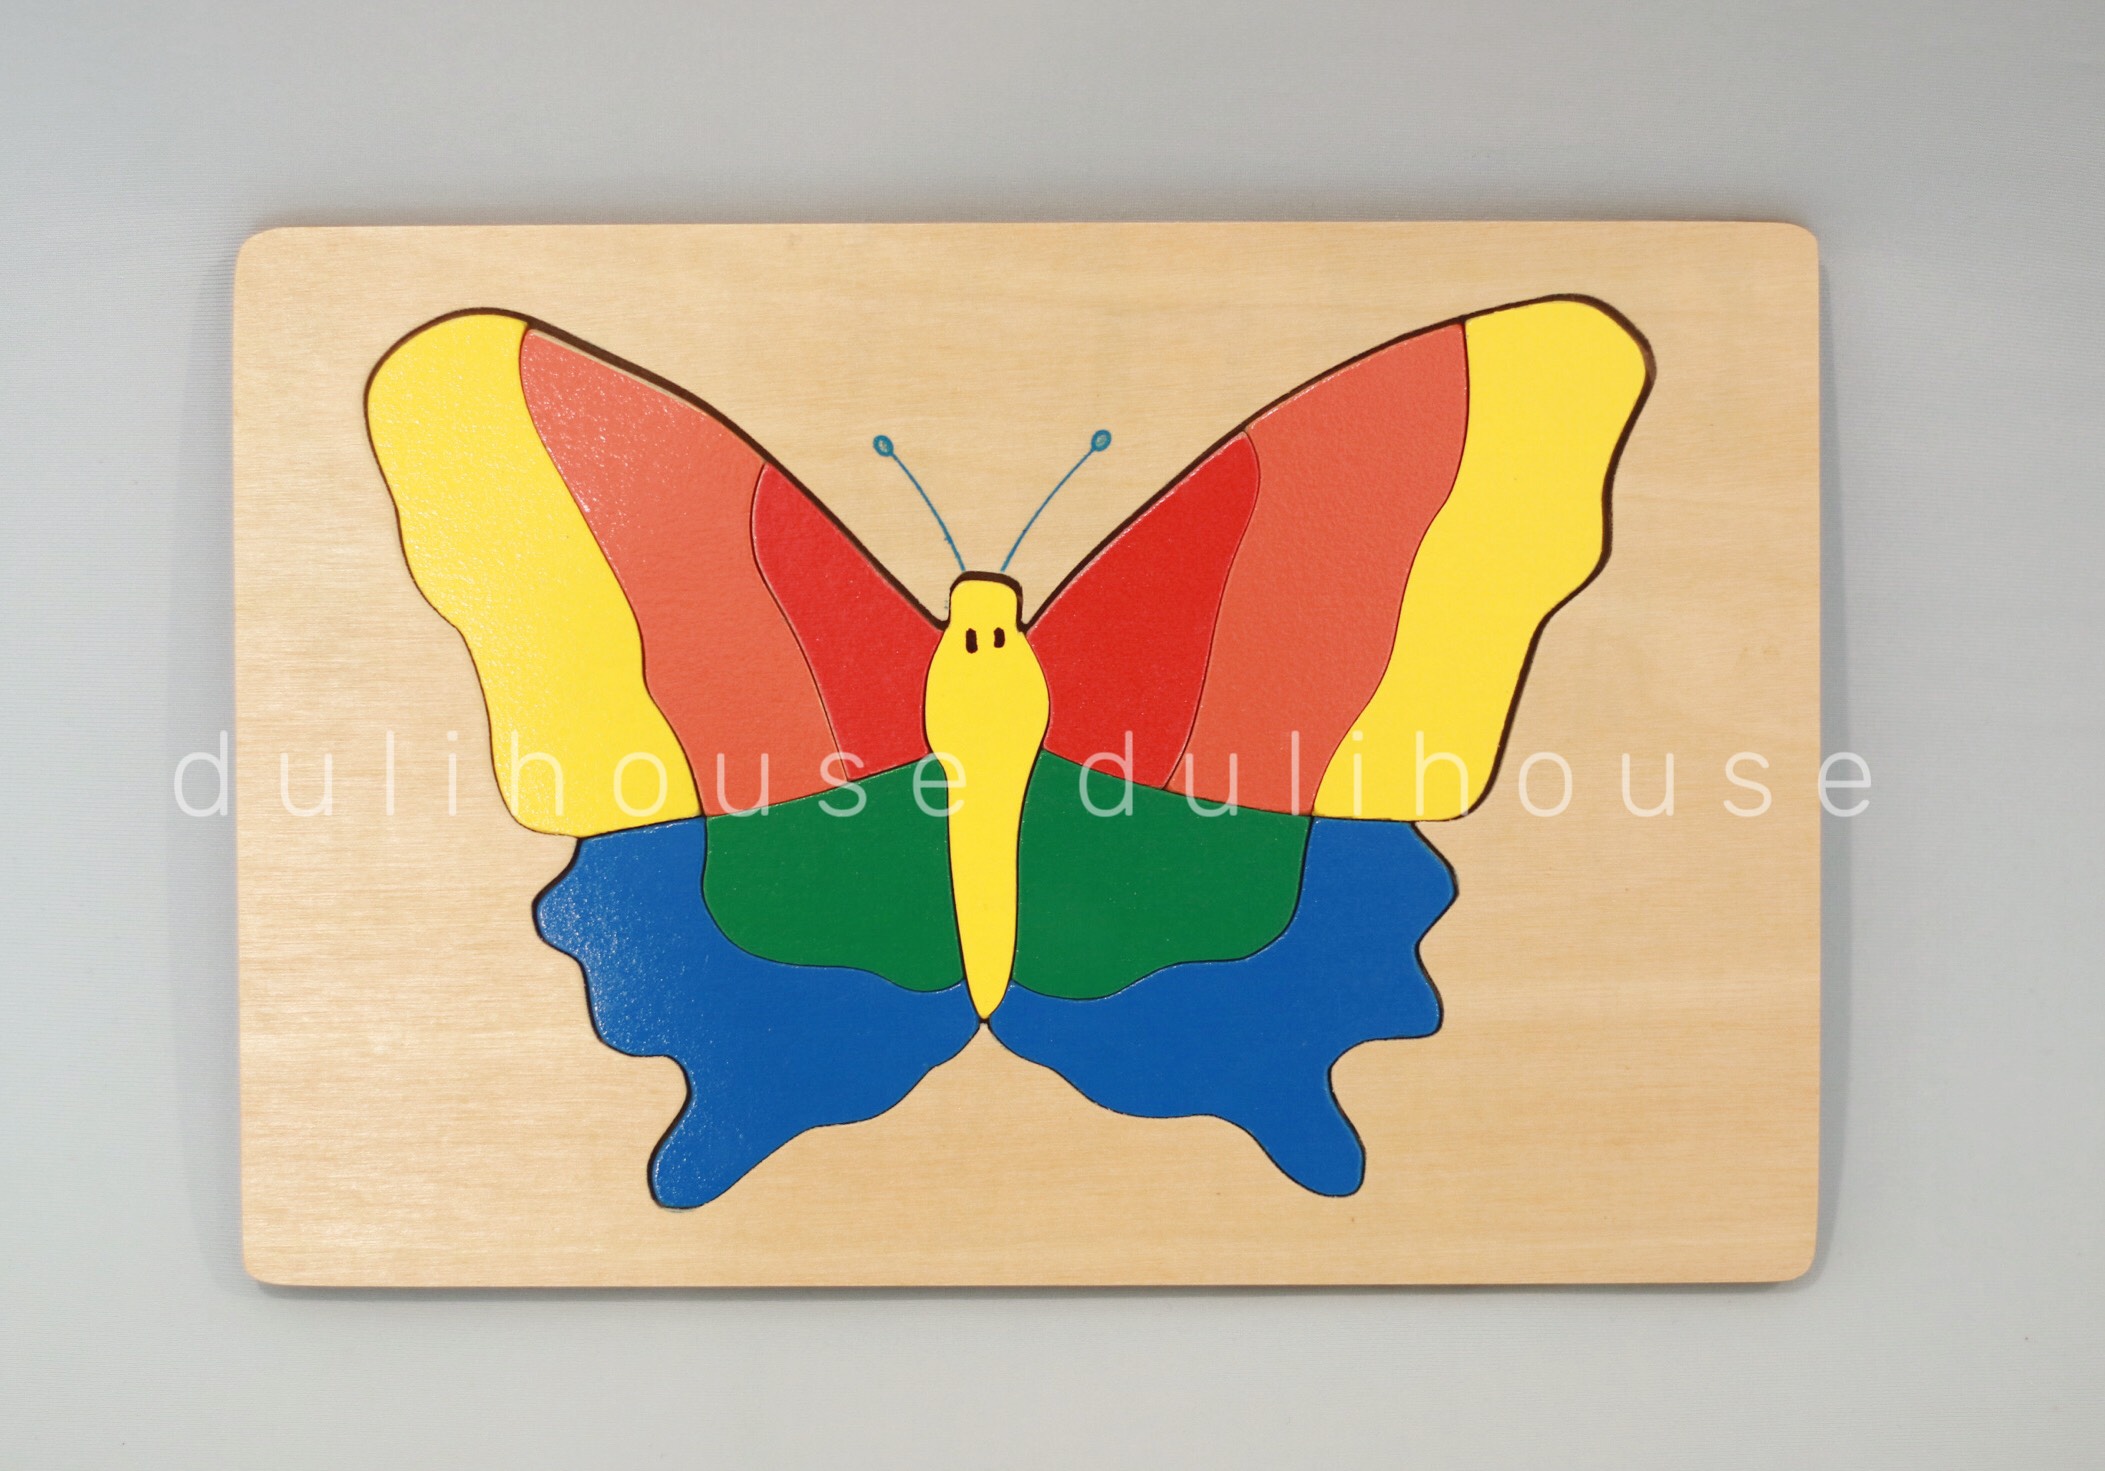 Đồ chơi gỗ cao cấp Tranh ghép hình con bướm - Hỗ trợ bé nhận biết màu sắc, phát triển tư duy logic, khám phá thế giới động vật, sản xuất tại Việt Nam